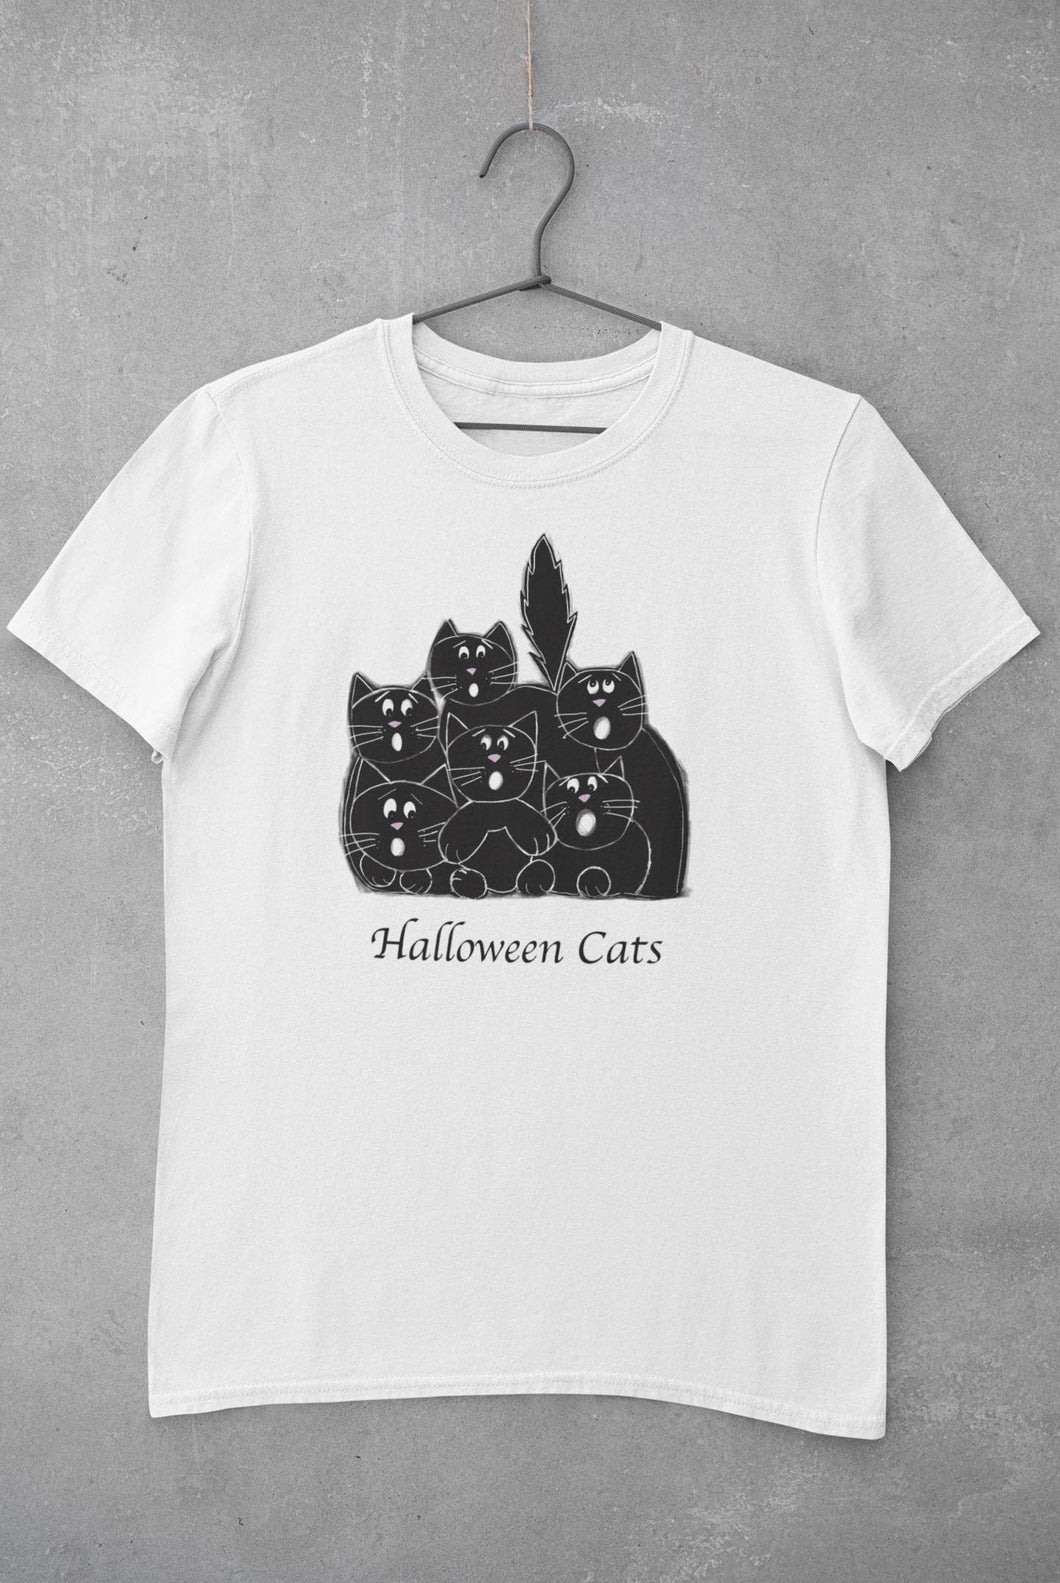 Halloween cats t-shirt